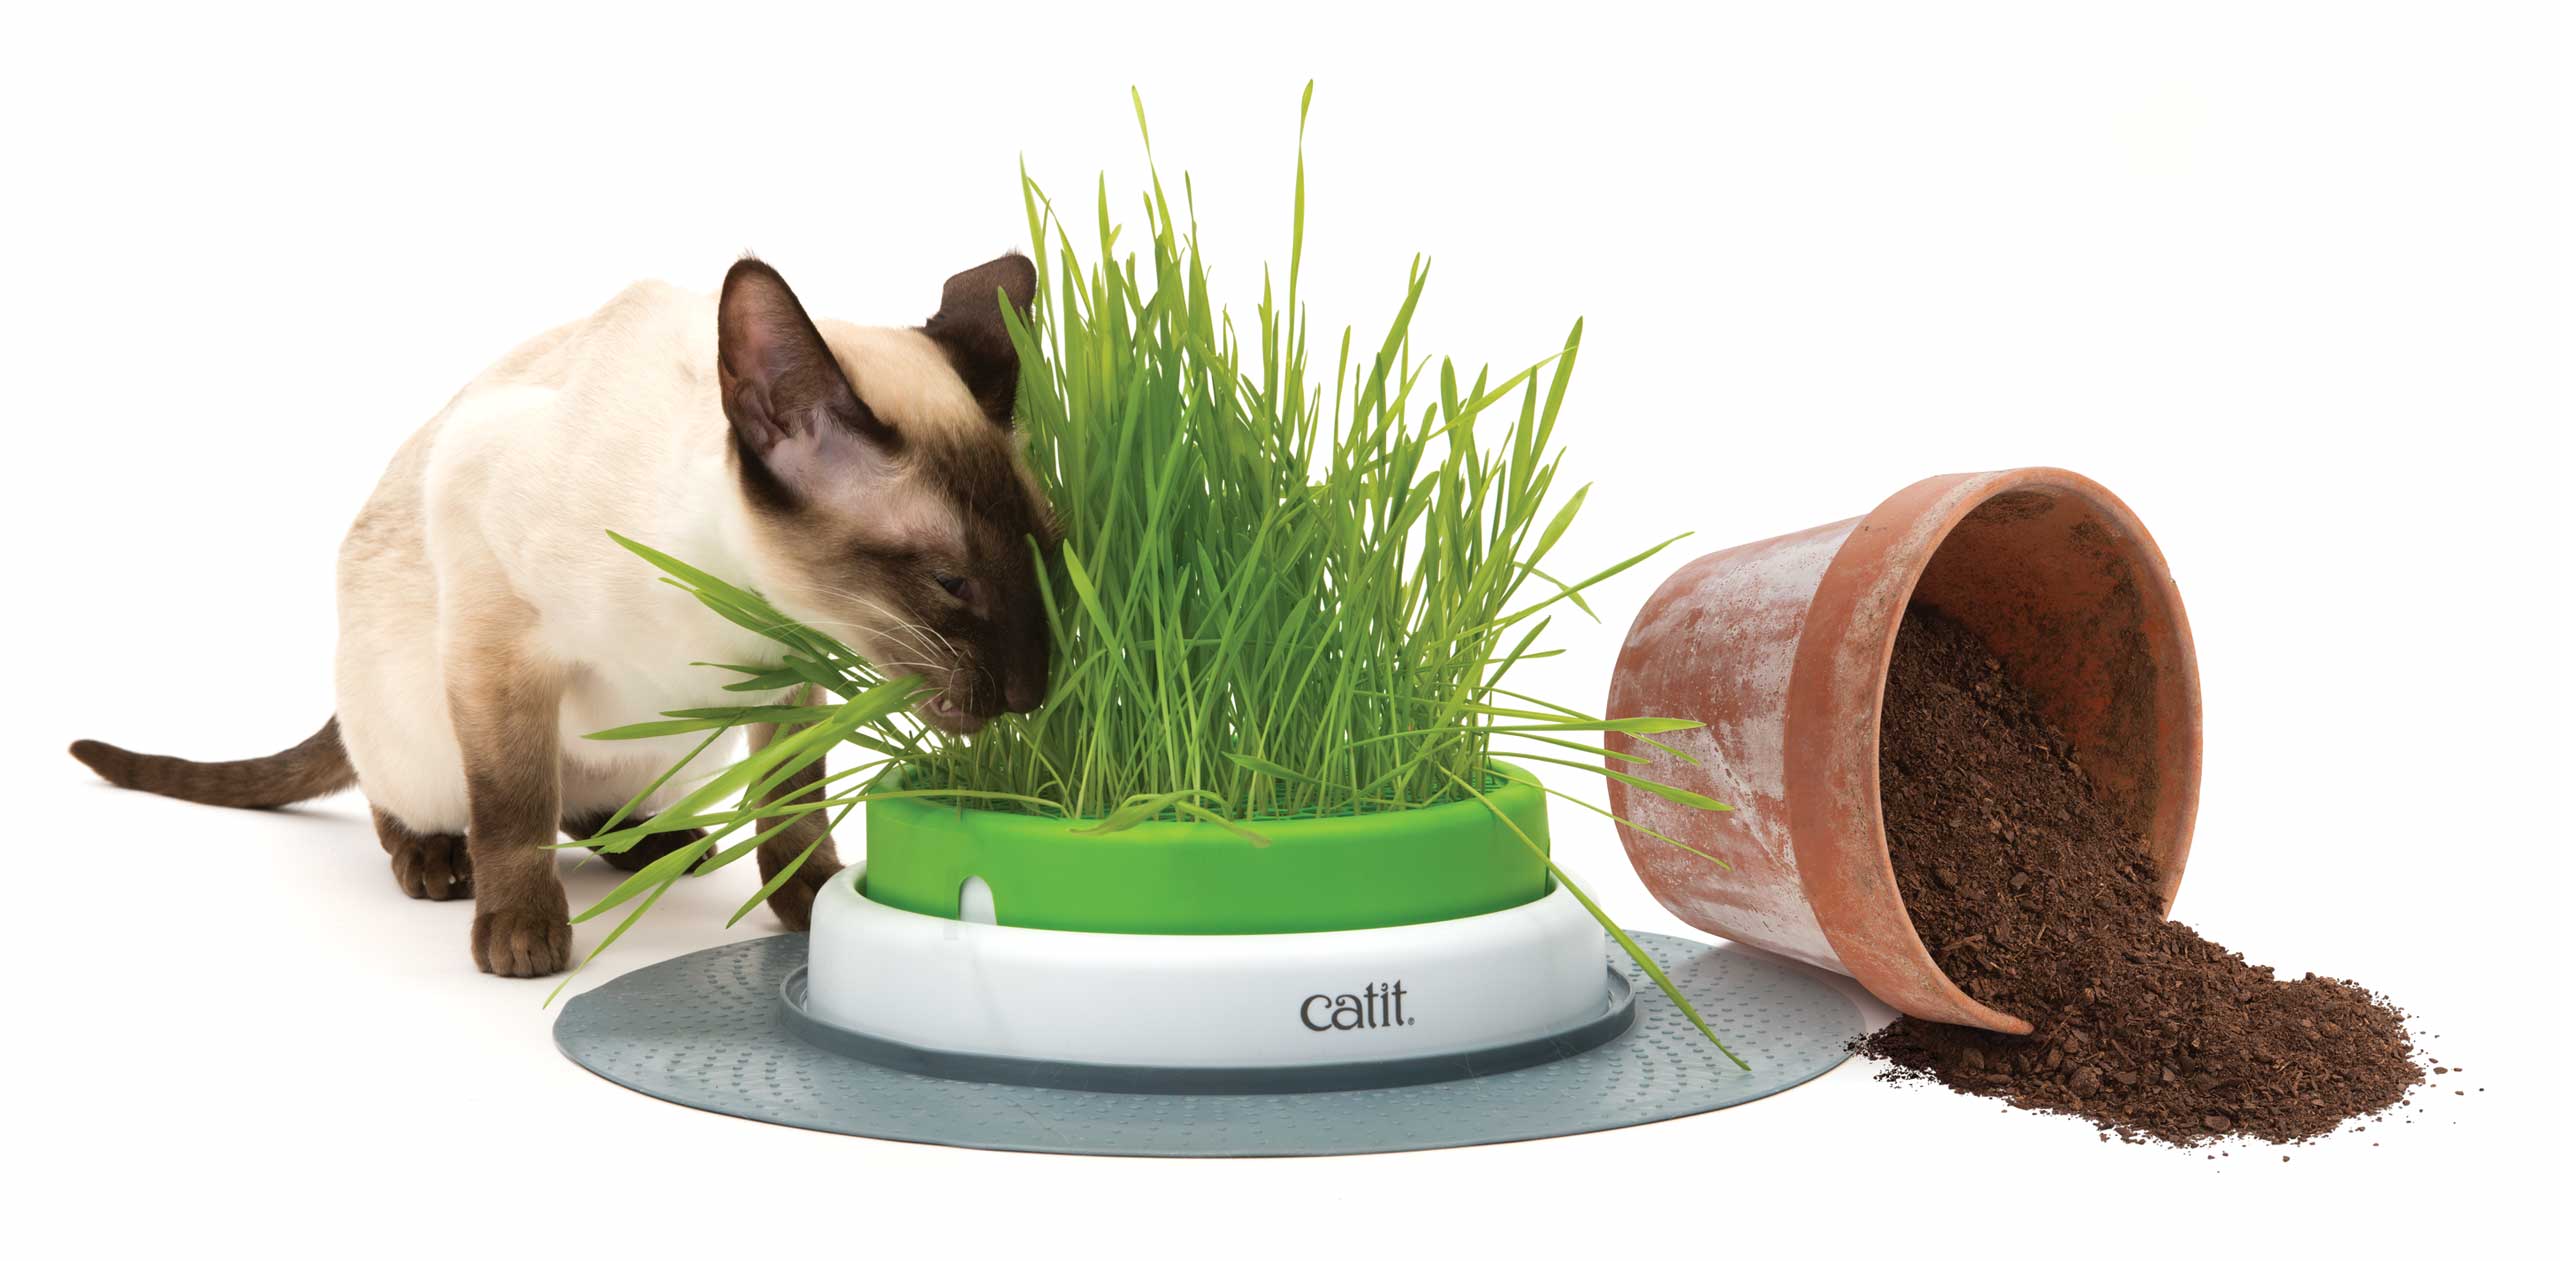 Catit Grass Cat Garden Kit grass included 